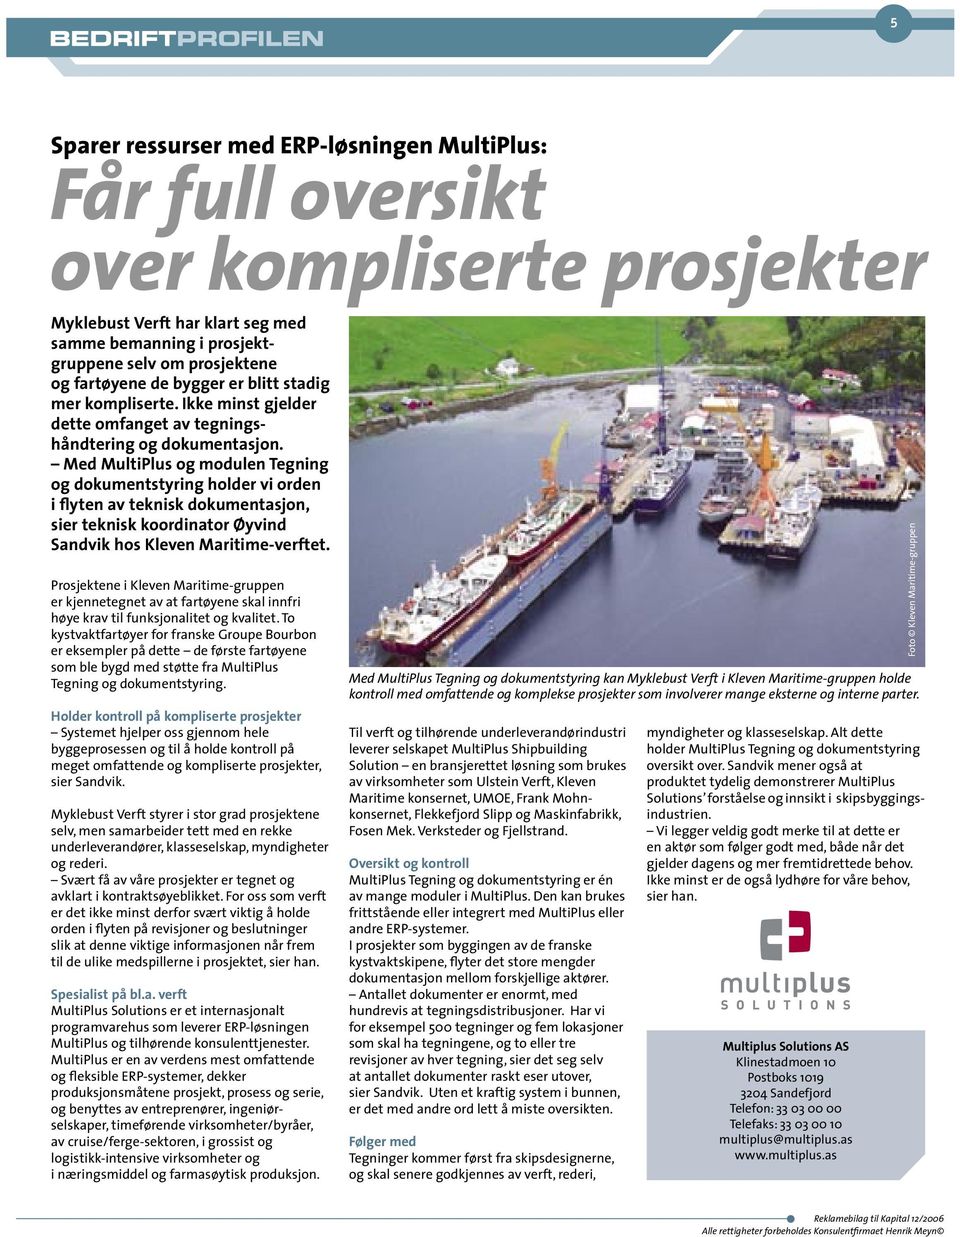 Med MultiPlus og modulen Tegning og dokumentstyring holder vi orden i flyten av teknisk dokumentasjon, sier teknisk koordinator Øyvind Sandvik hos Kleven Maritime-verftet.